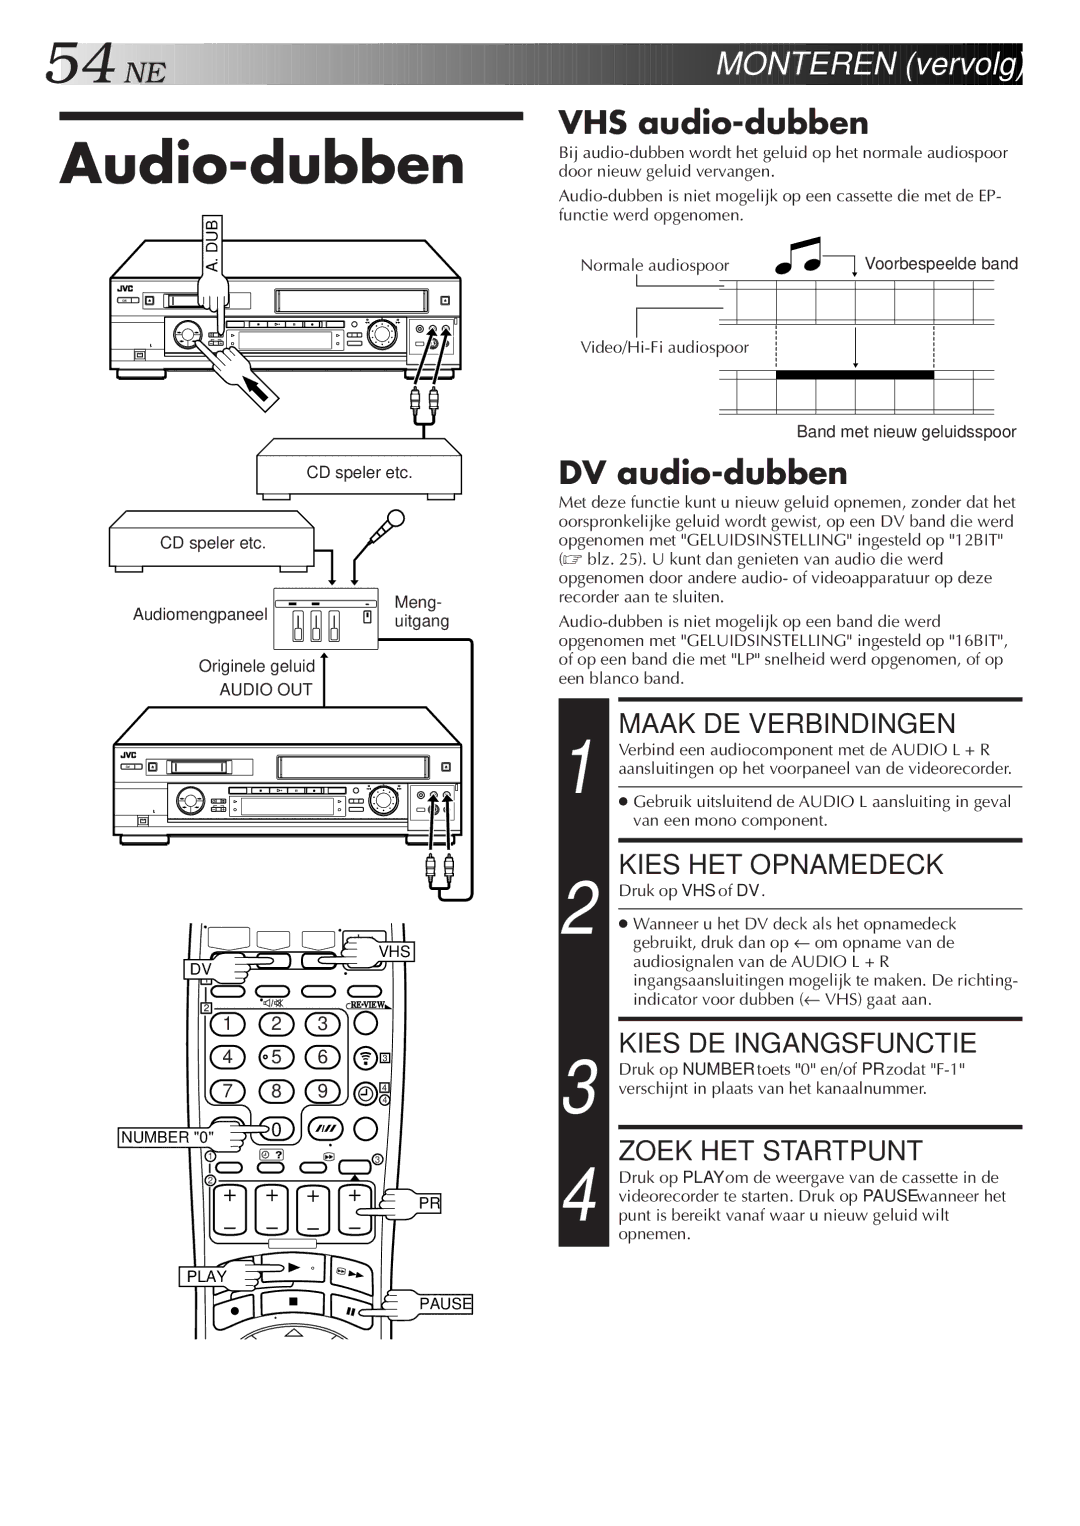 JVC HR-DVS2EU manual Audio-dubben, VHS audio-dubben, DV audio-dubben 